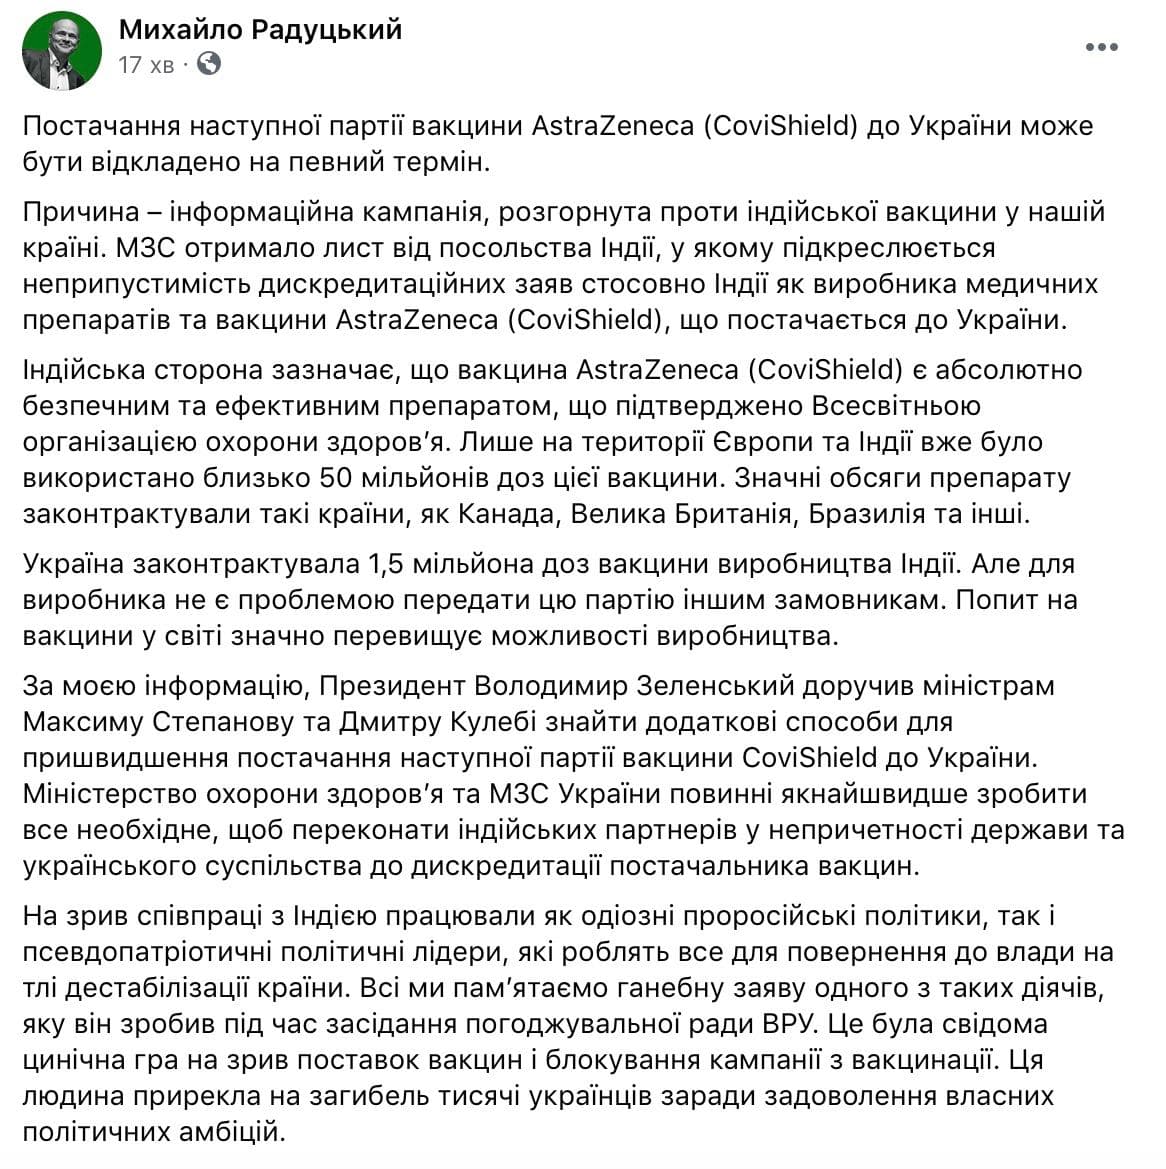 Новые поставки CoviShield в Украину могут отложить. Радуцкий намекнул, что в этом виноват Порошенко. Скриншот: Радуцкий